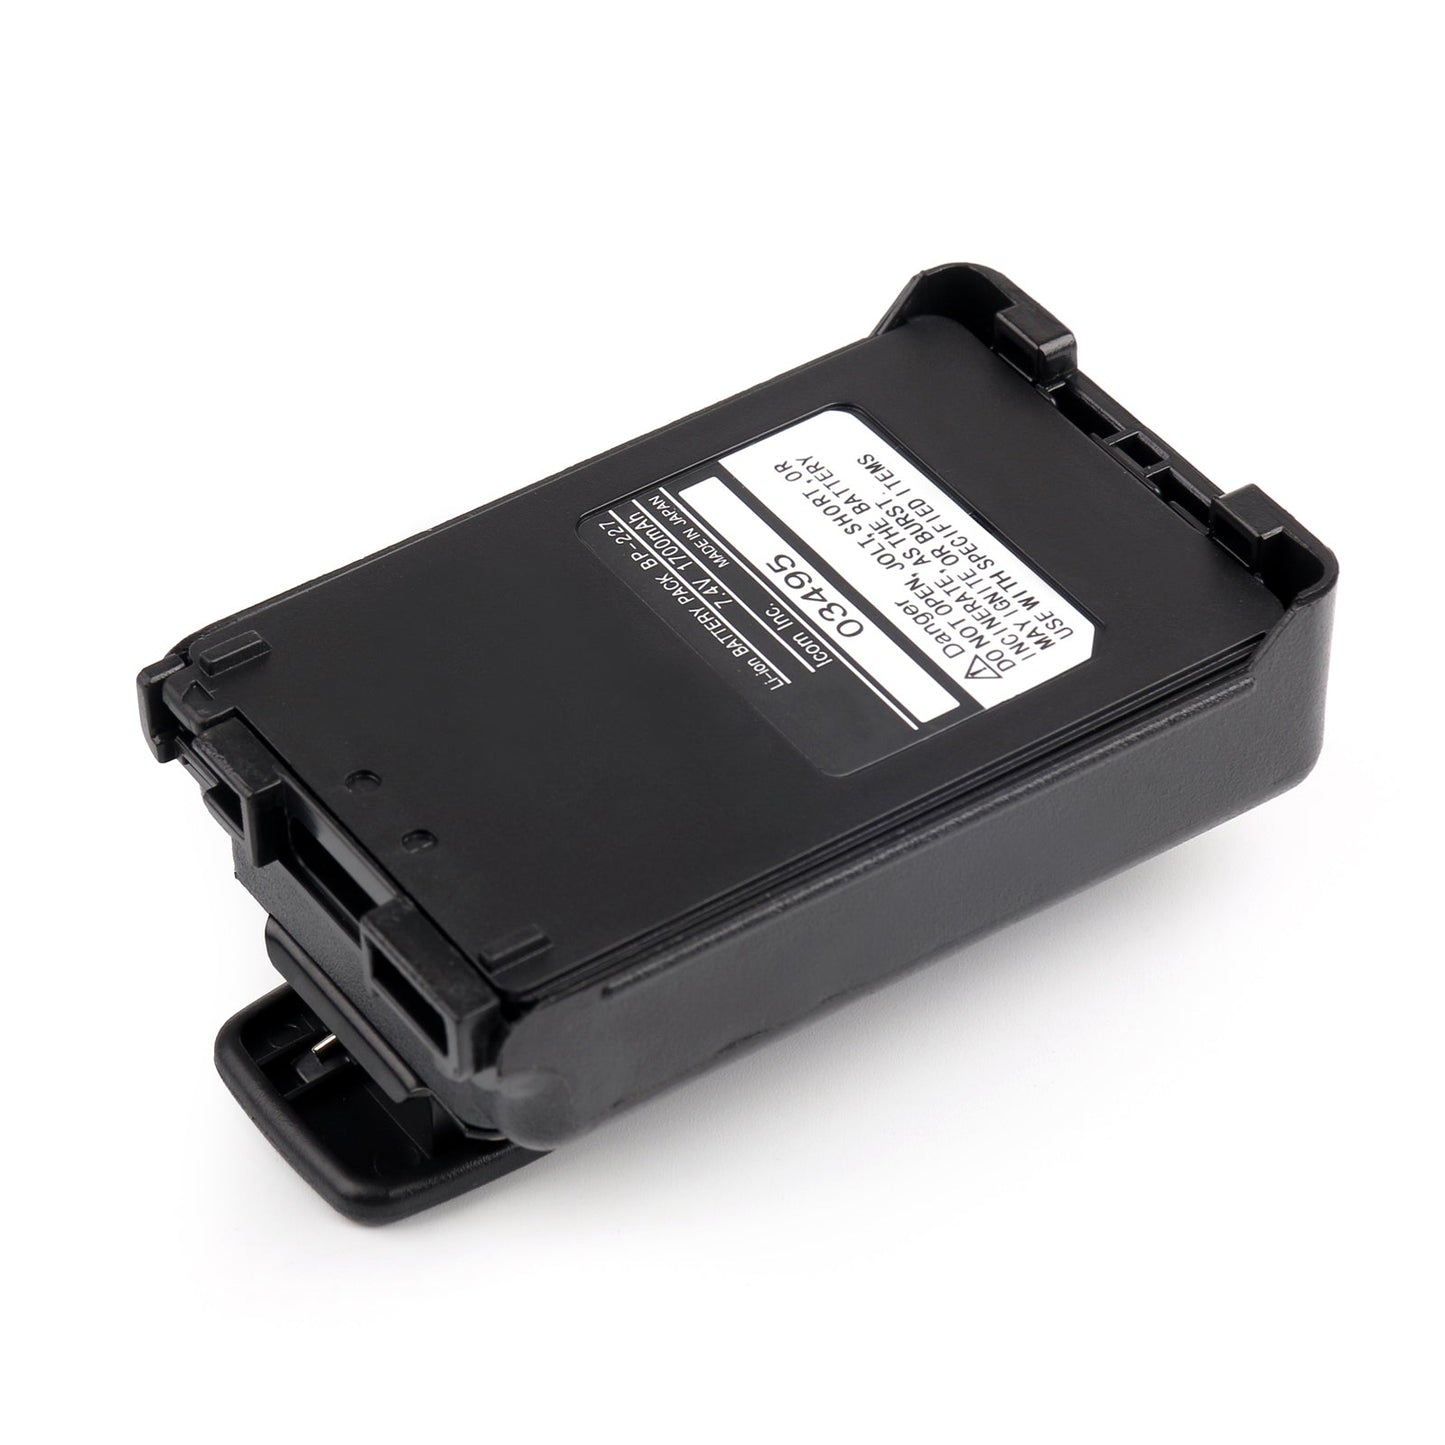 4PCS 7.4V 1700mAh BP-227 Battery Case For Icom IC-V85 IC-51 IC-M88